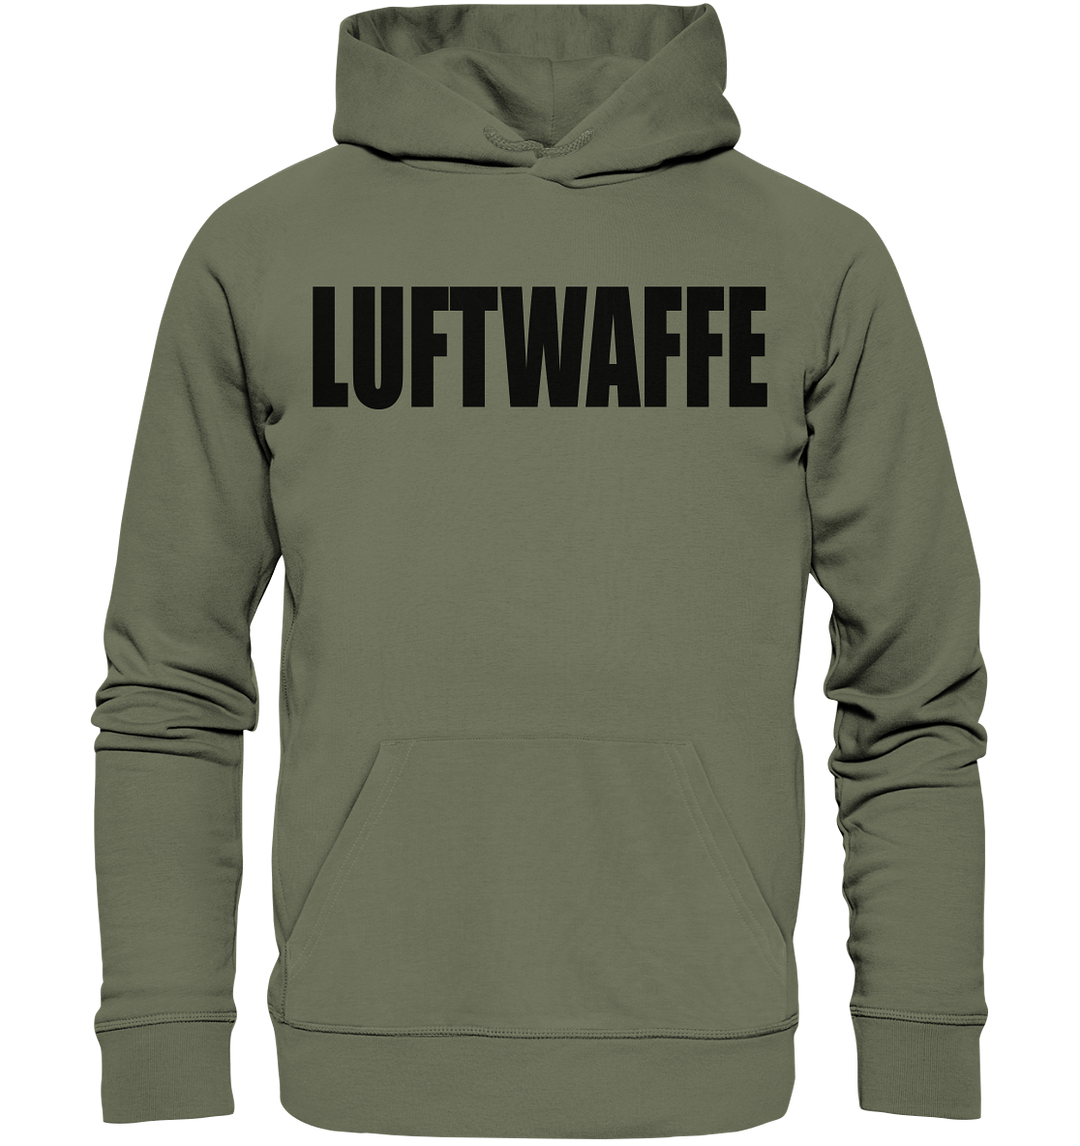 LUFTWAFFE - Premium Unisex Hoodie